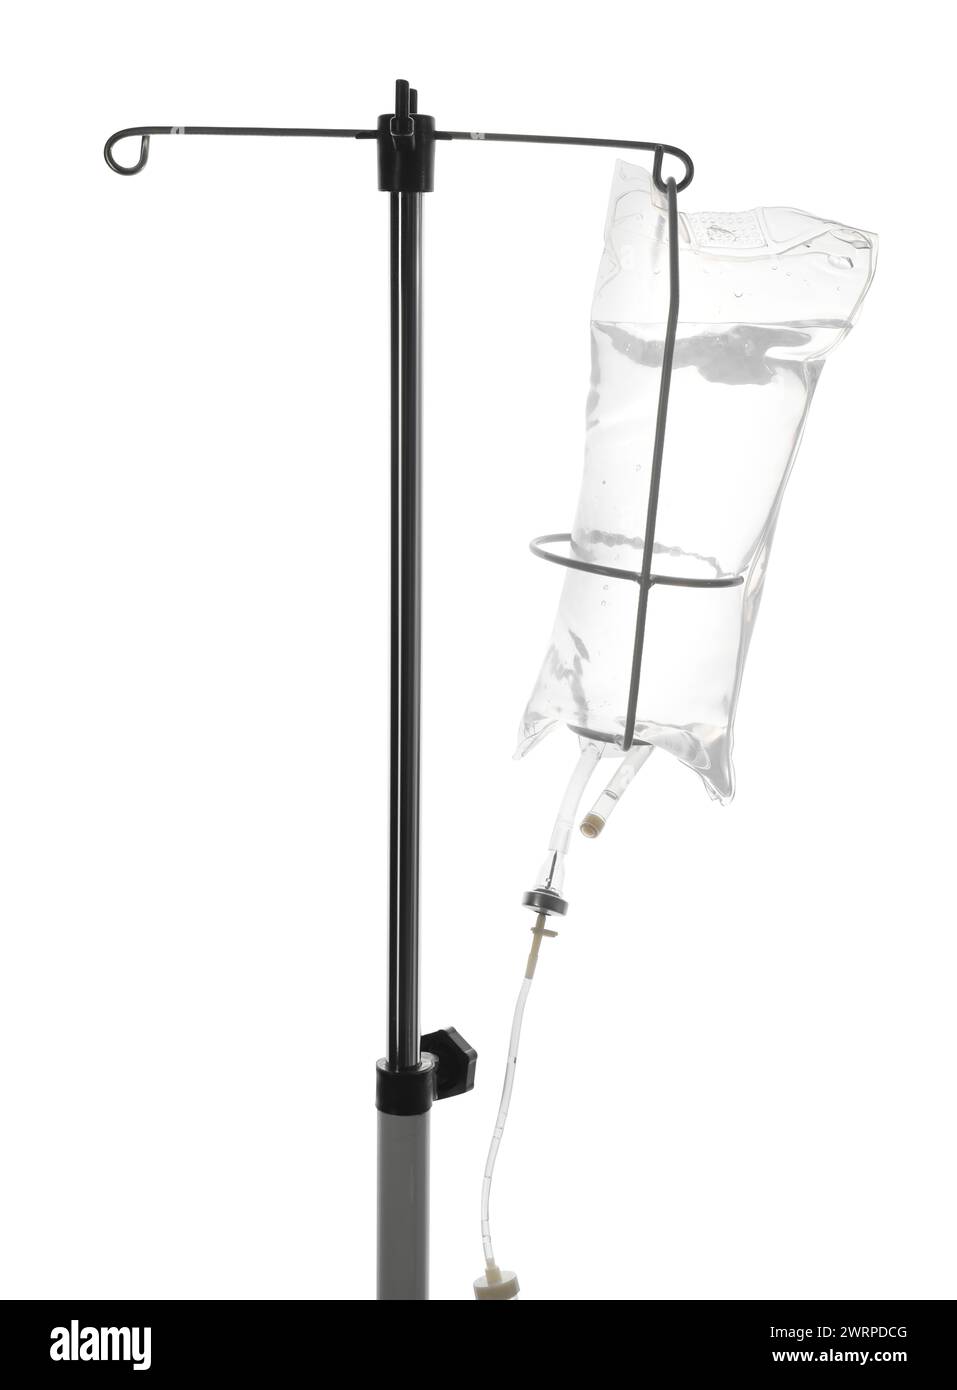 IV infusion set on pole against white background Stock Photo